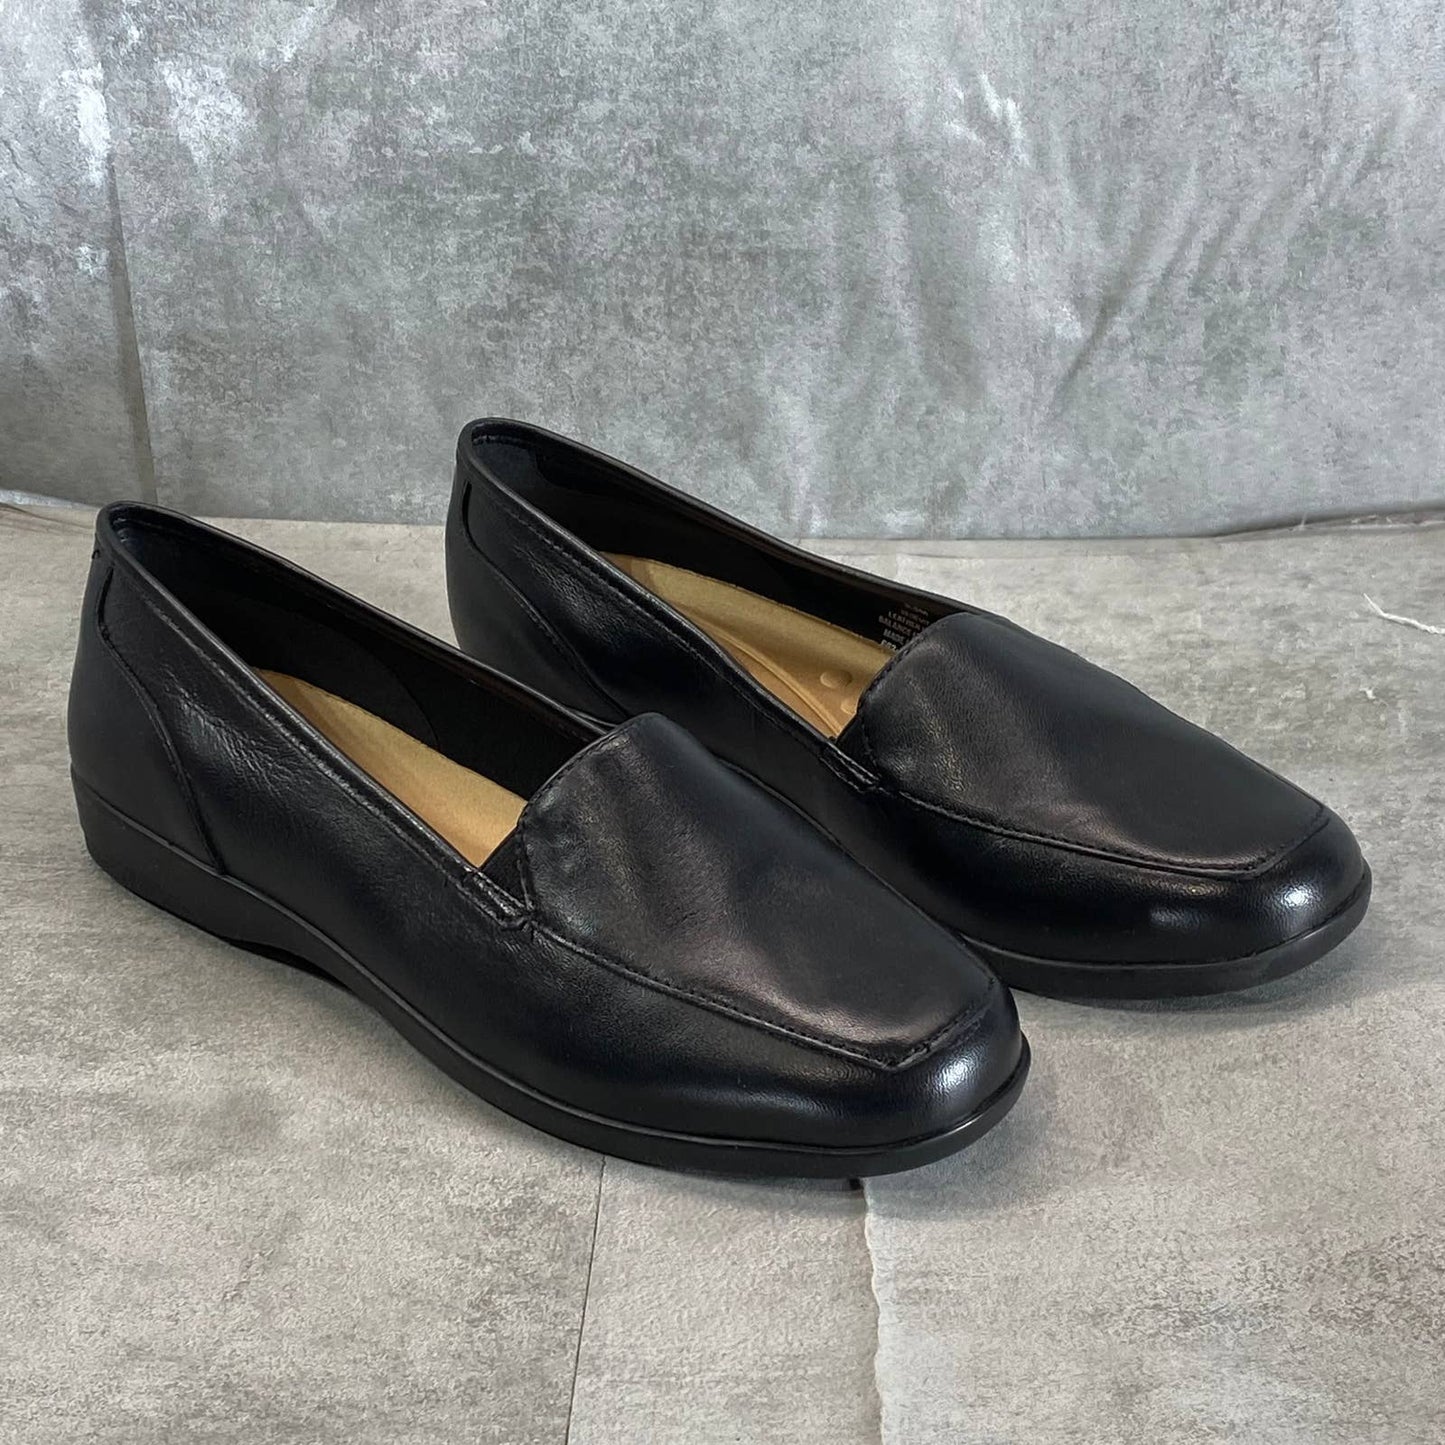 EASY SPIRIT Women's Black Leather Devitt Round-Toe Slip-On Loafer Flats SZ 8.5